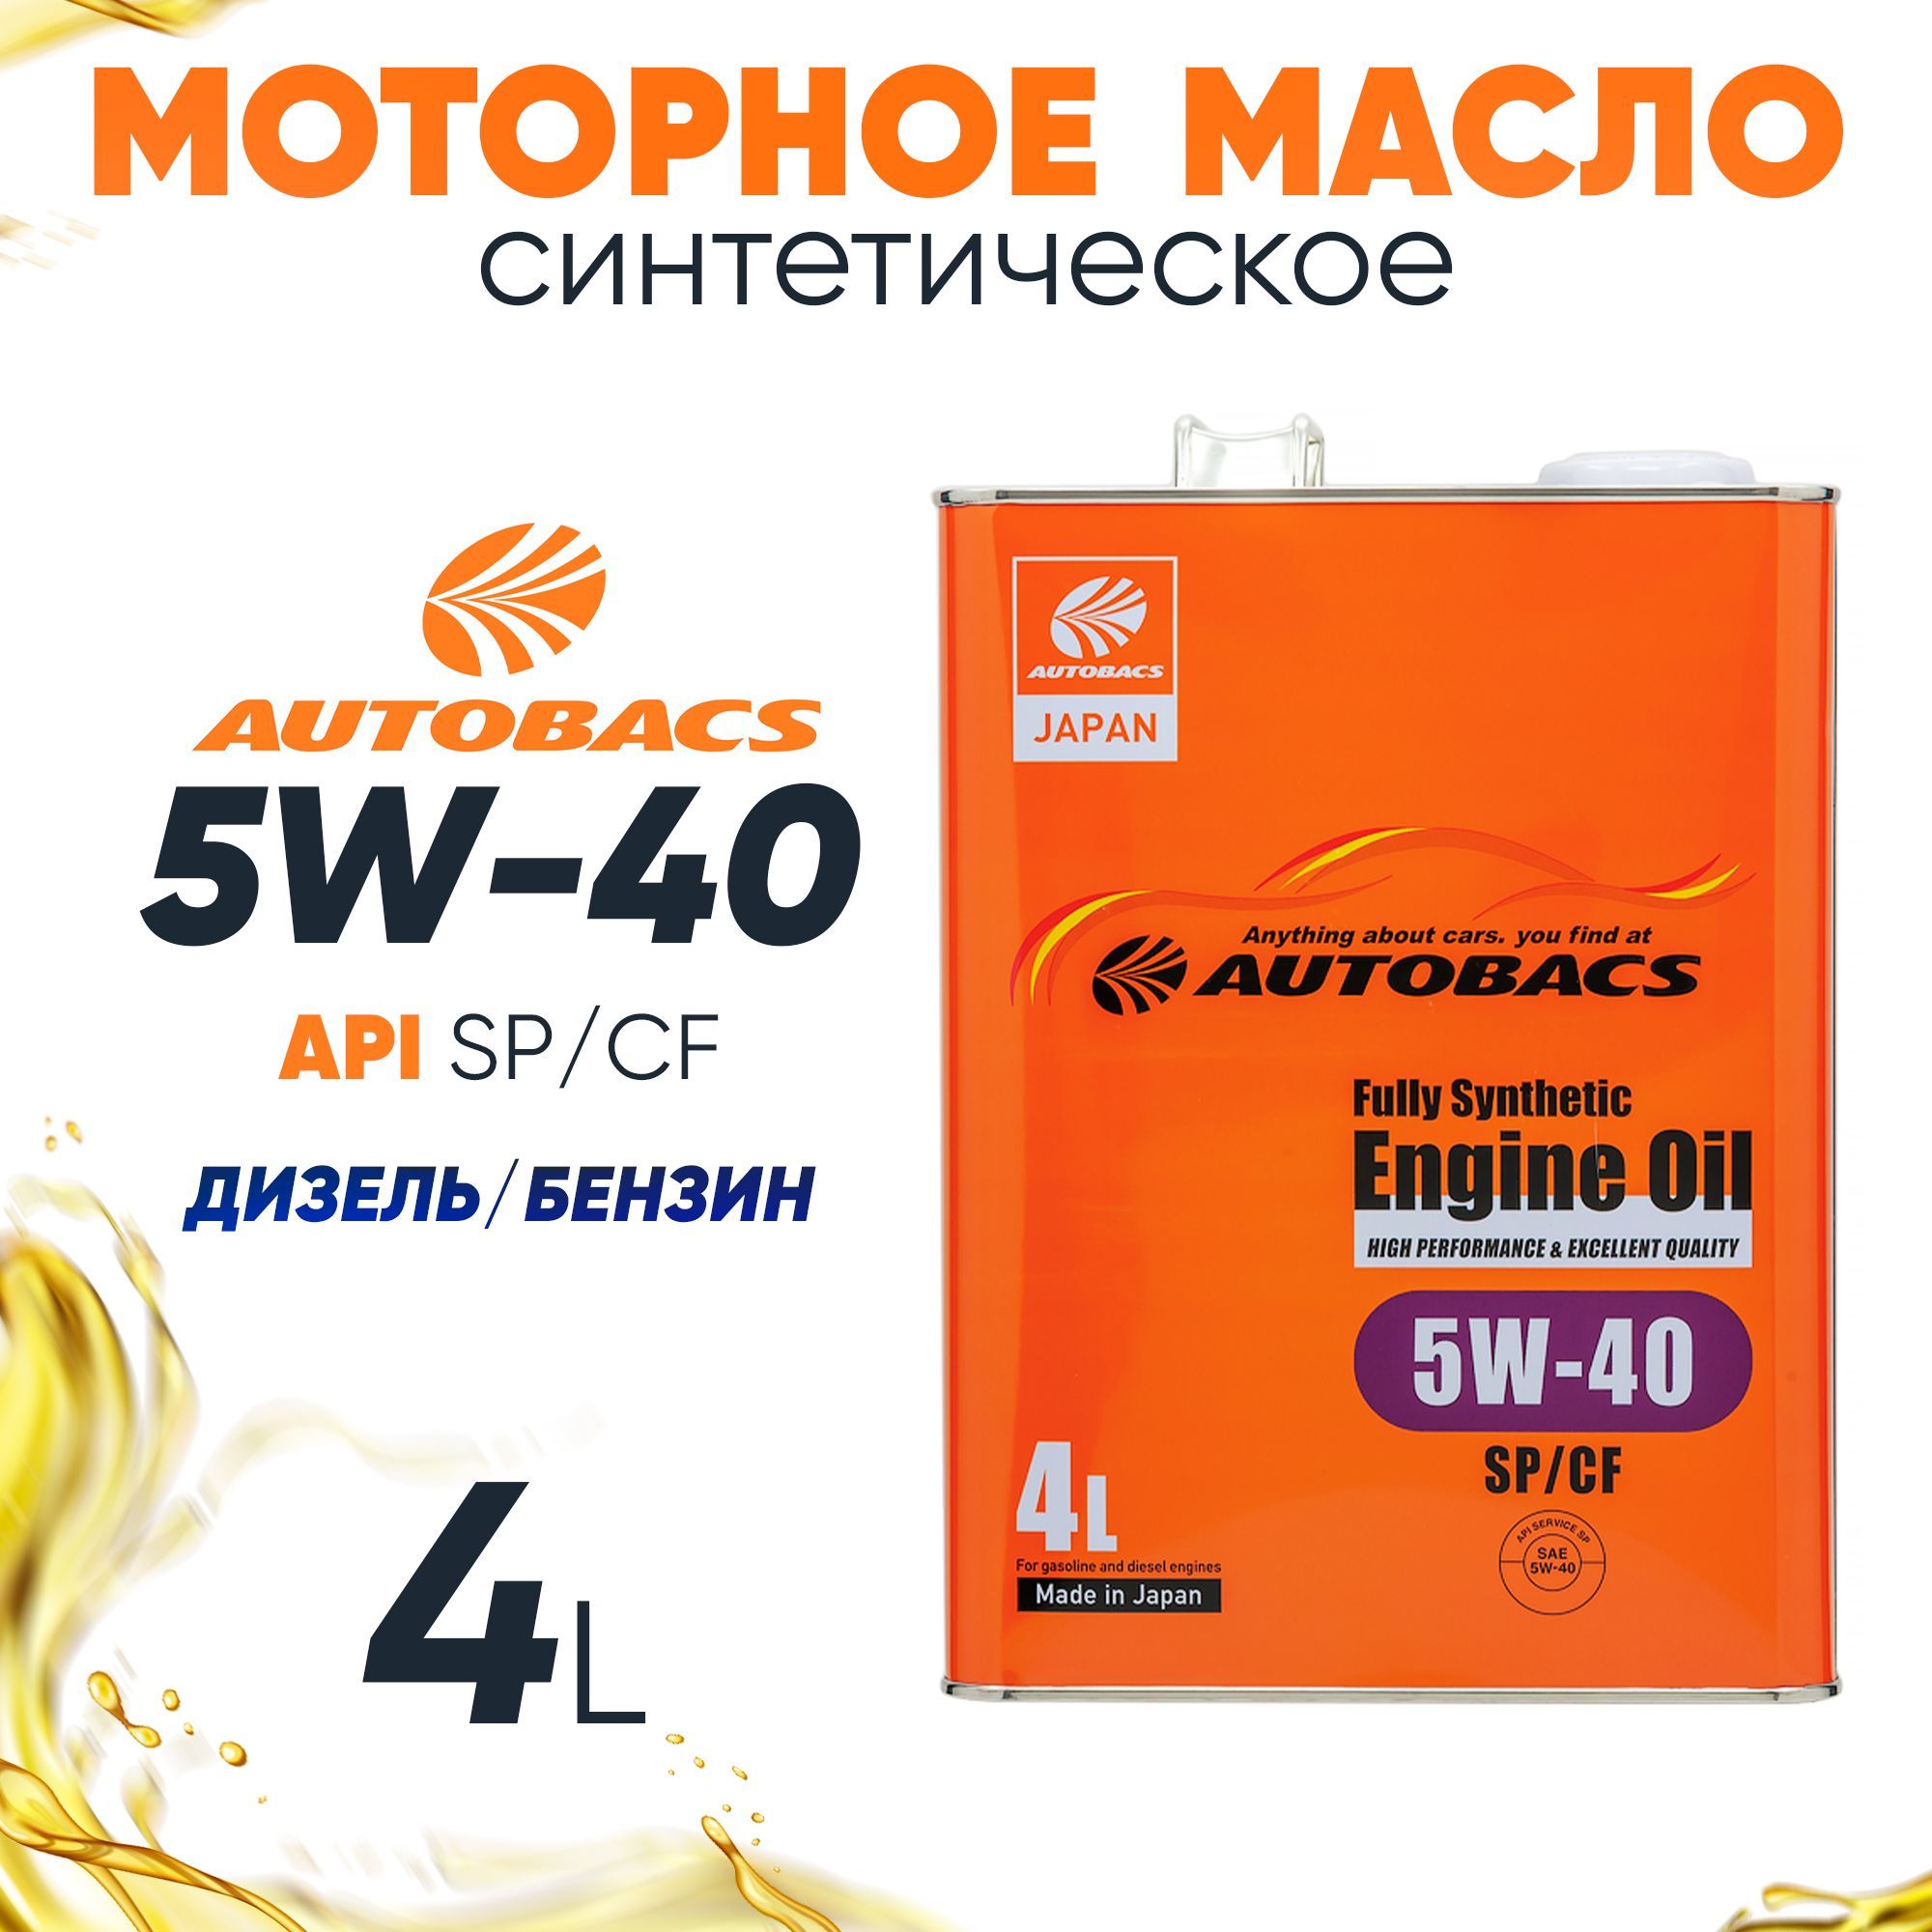 Вмпавто 5w40 отзывы. Масло моторное AUTOBACS fully Synthetic. Fully Synthetic. Fully Synthetic 5w30 перевод на русский с английского на русский язык.